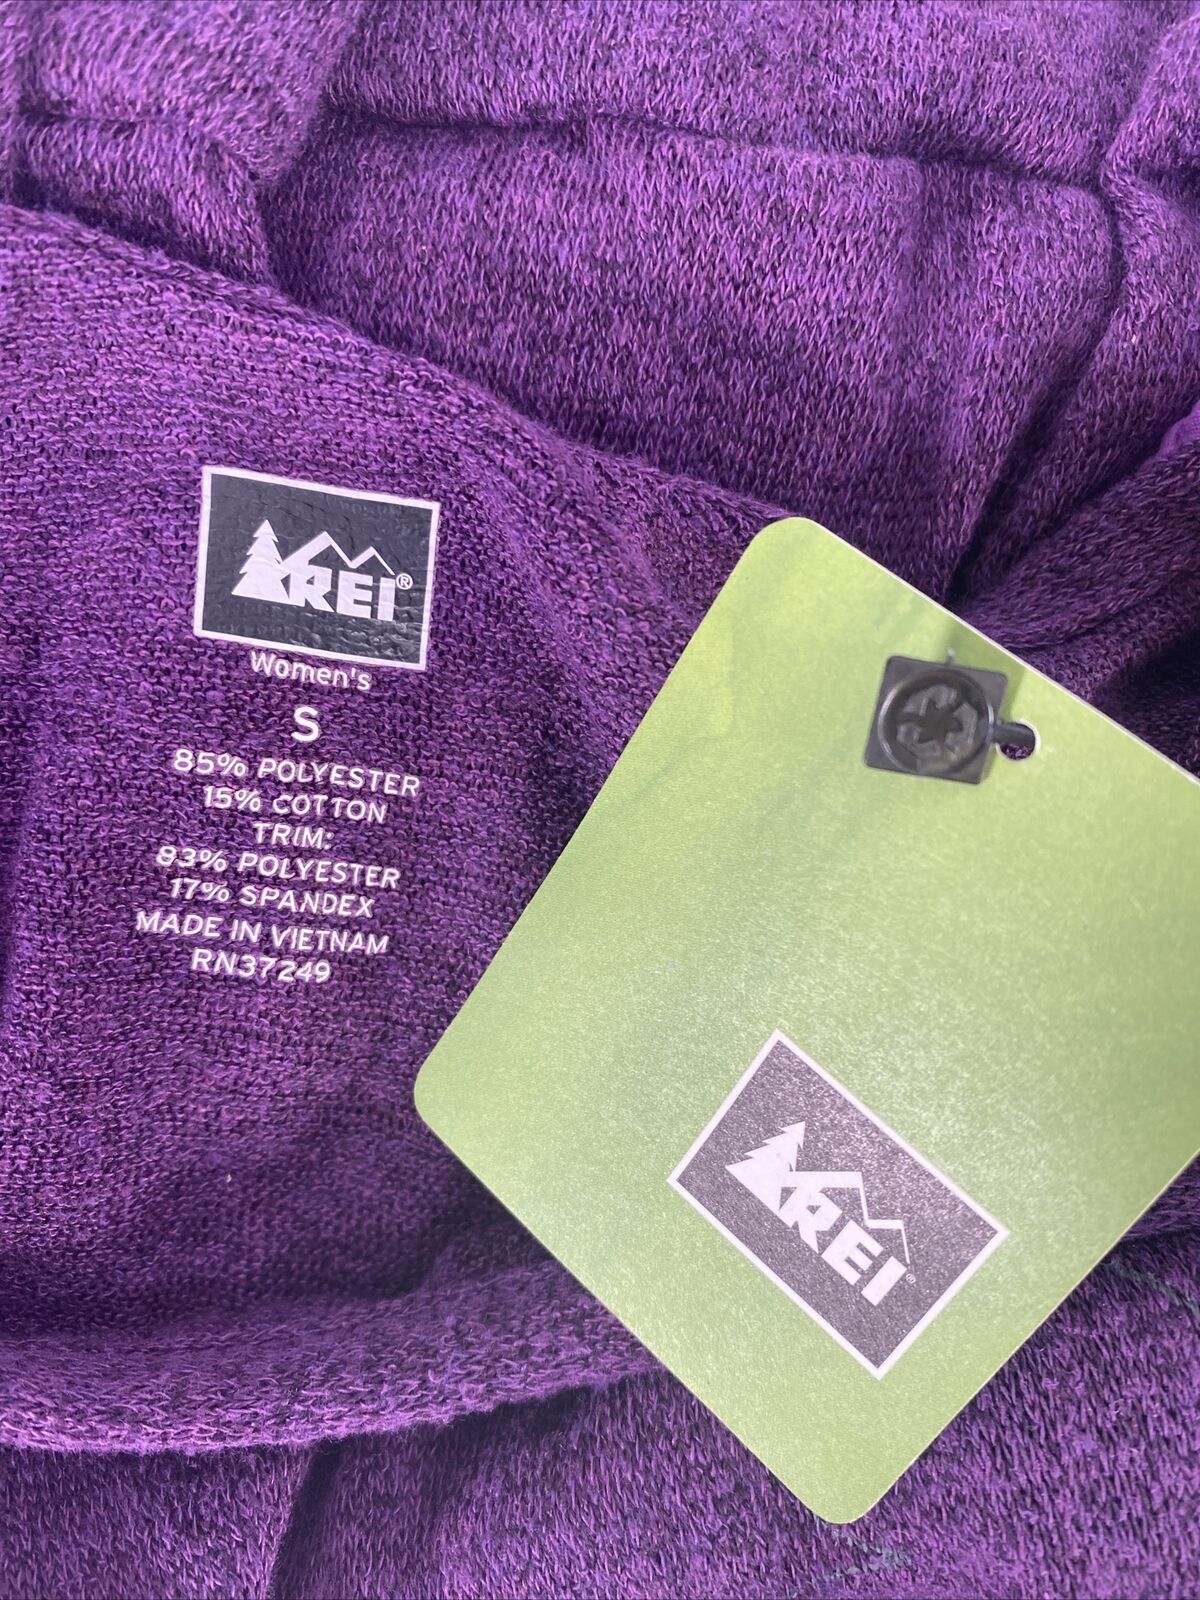 NEW REI Women's Purple Thin Knit Long Sleeve Open Back Sweater - S